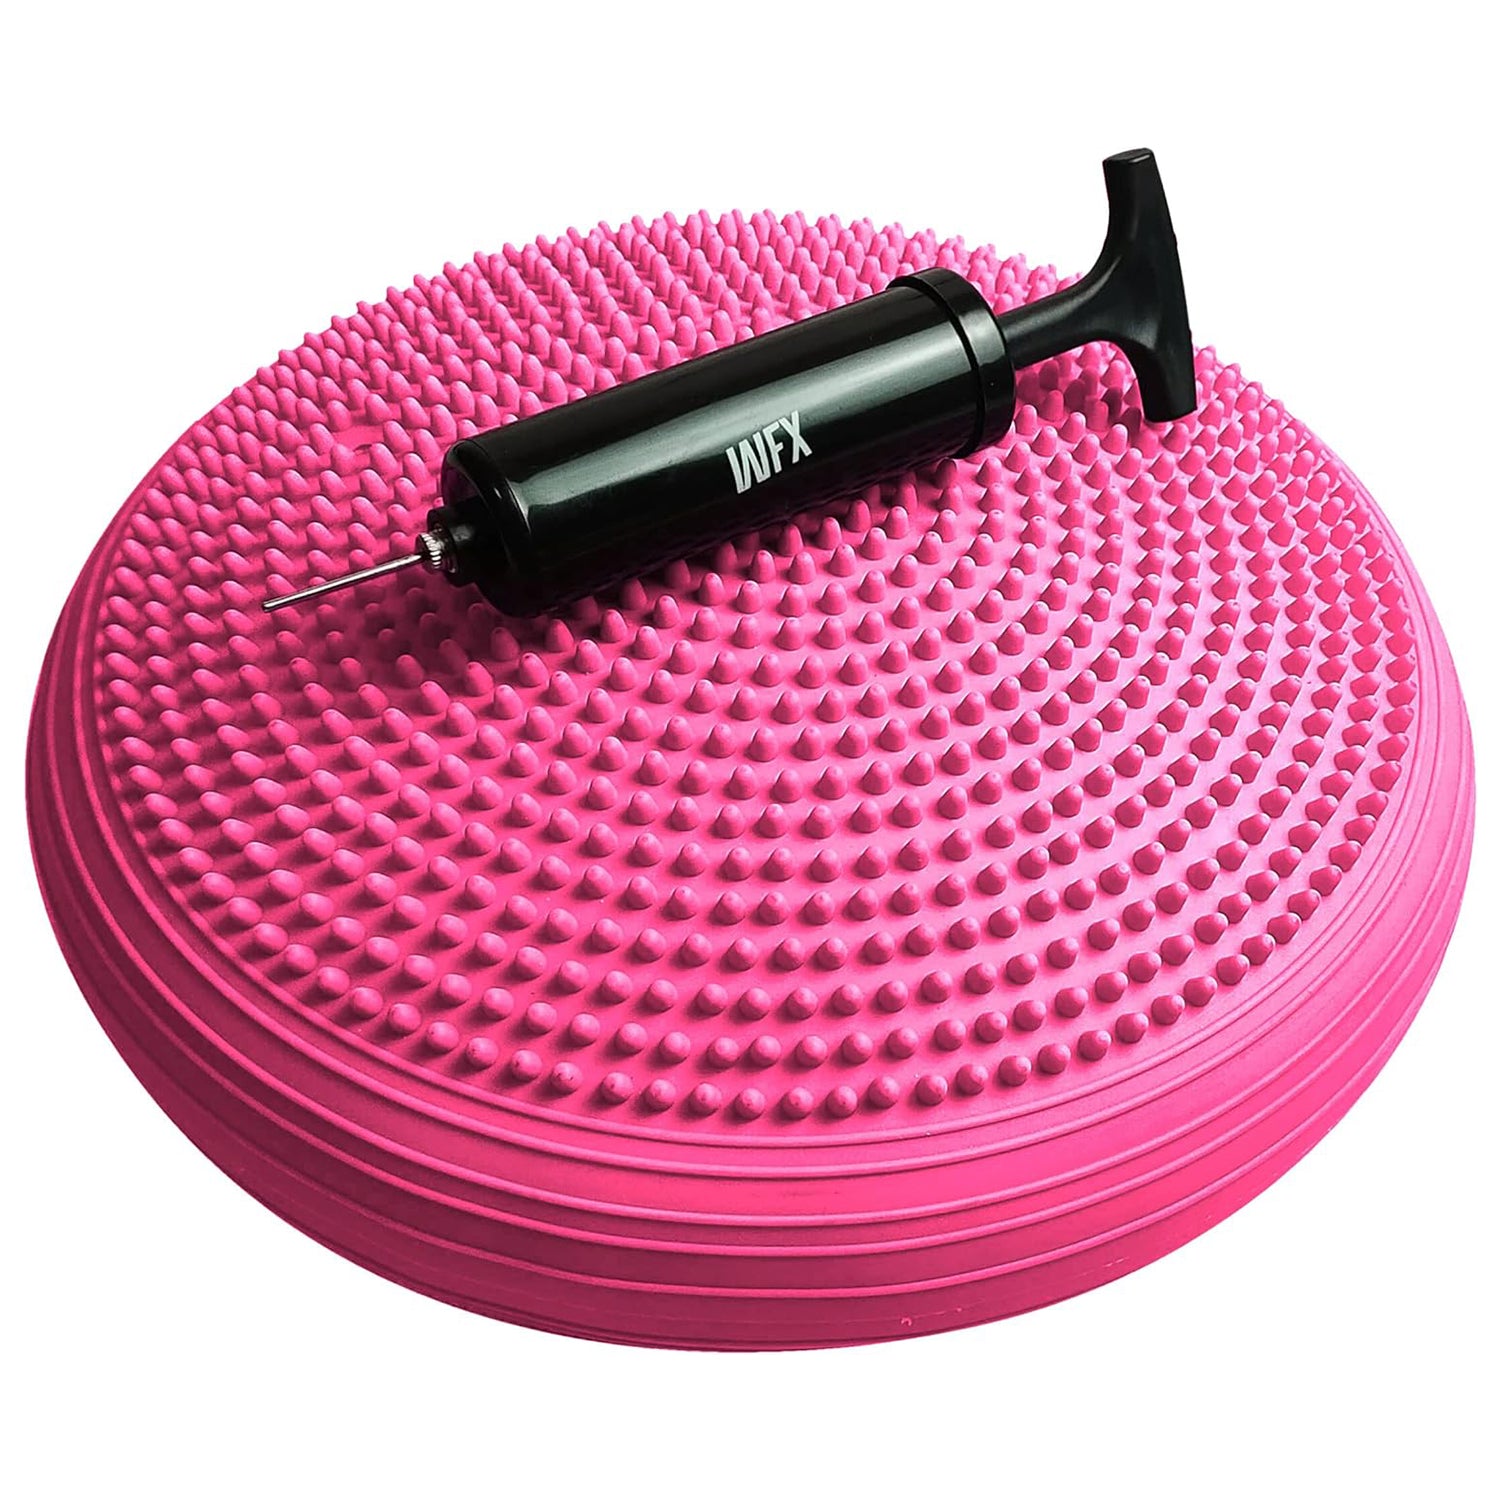 Ballsitzkissen "Blowup" - Inkl. Pumpe  - Ø 33 cm  - Pink von #DoYourFitness